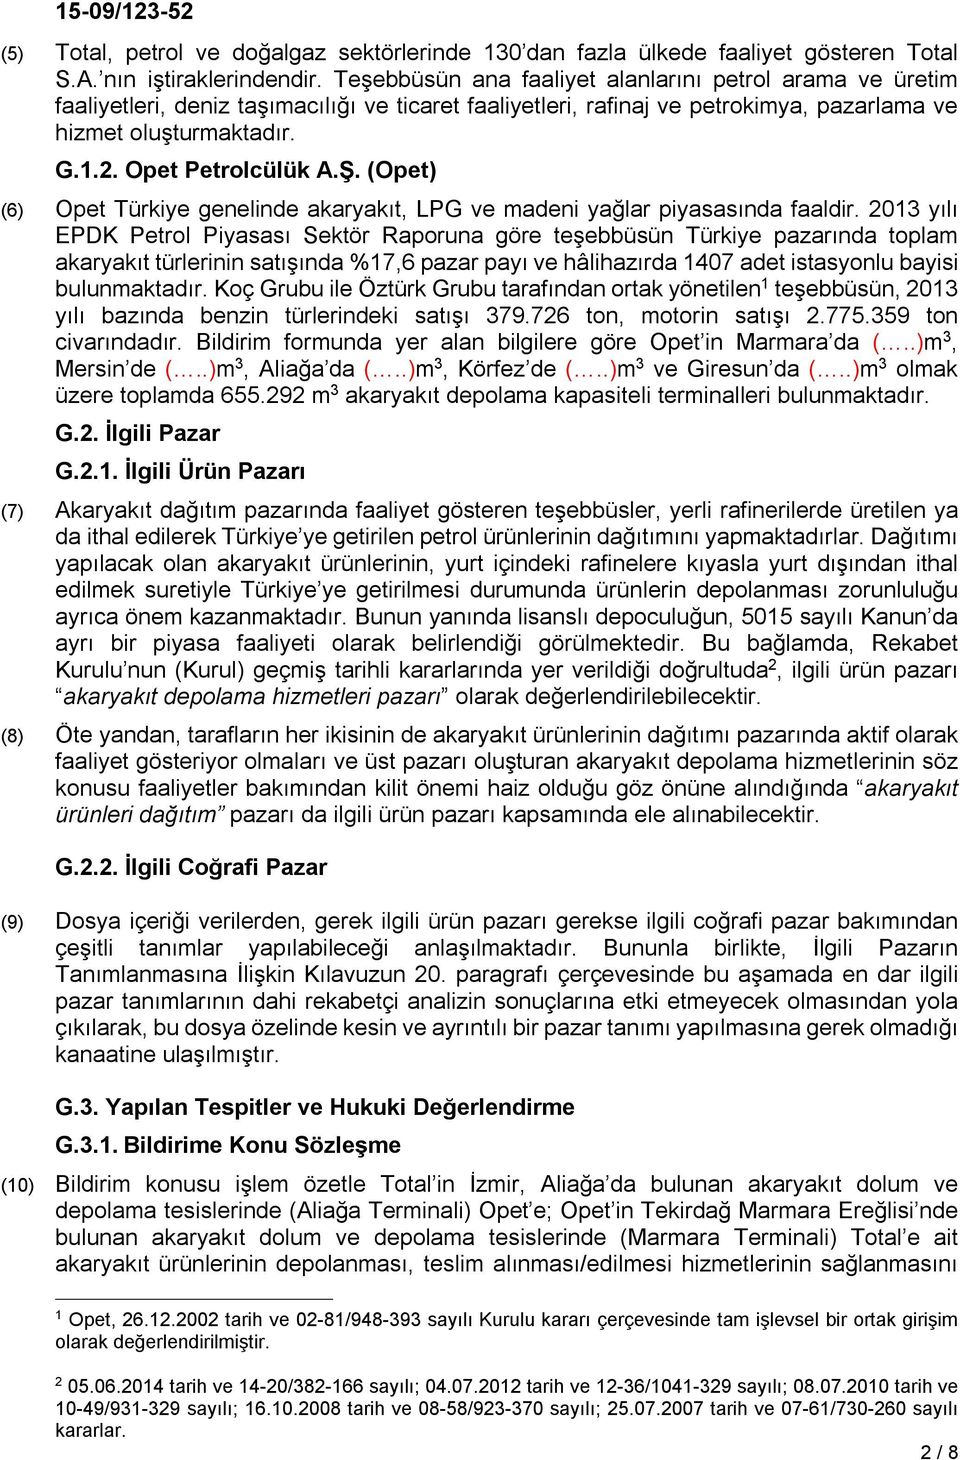 Opet Petrolcülük A.Ş. (Opet) (6) Opet Türkiye genelinde akaryakıt, LPG ve madeni yağlar piyasasında faaldir.